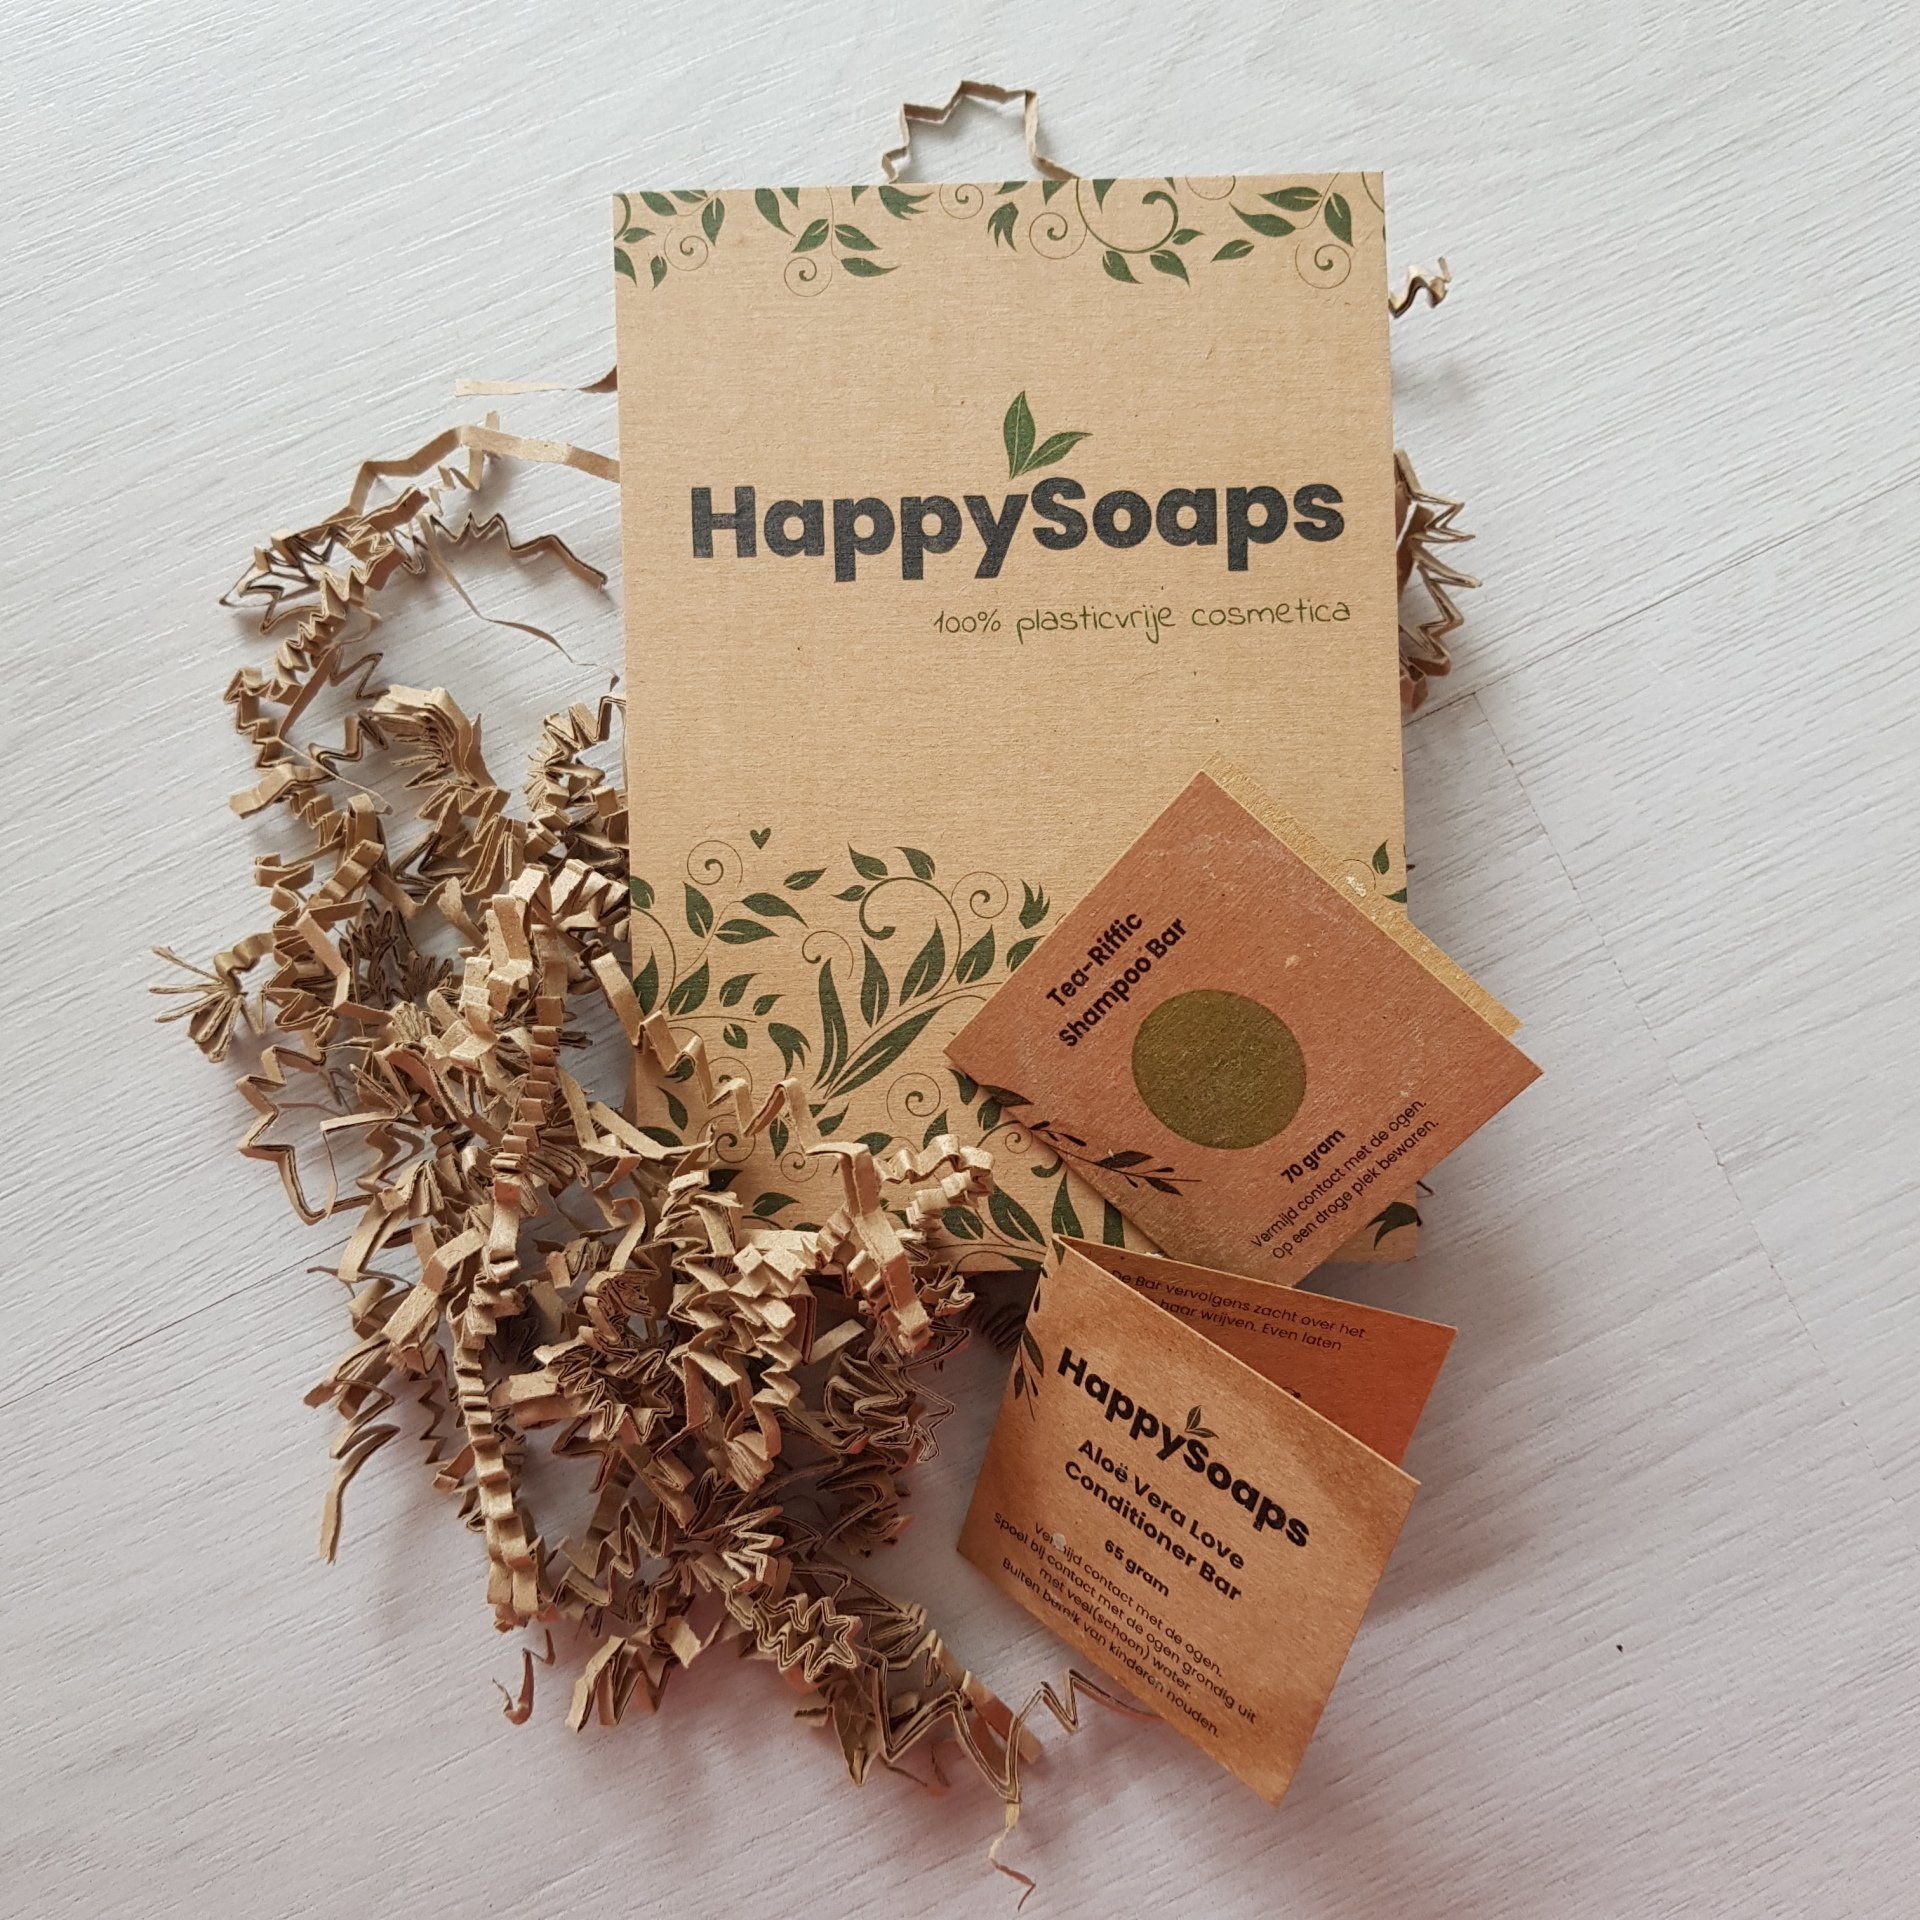 Plasticvrij verpakte shampoobar van Happy Soaps